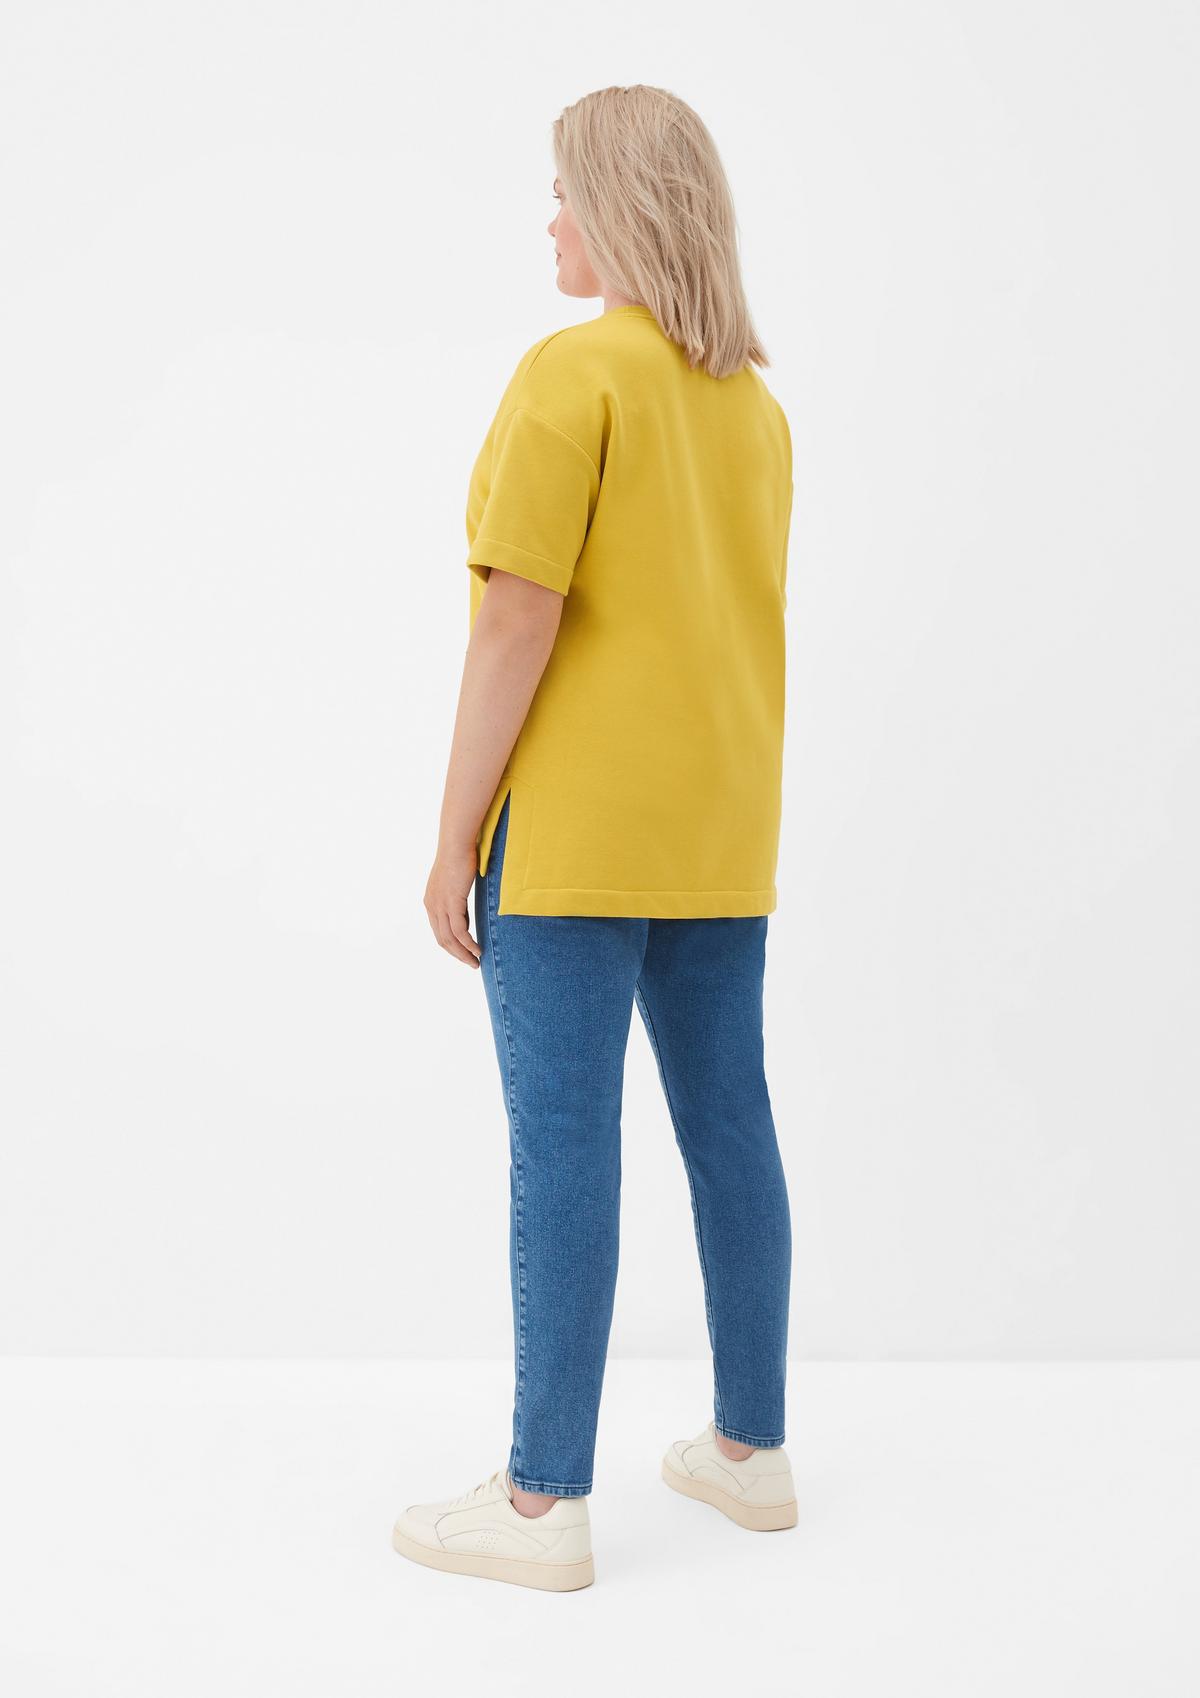 mit - kurzen Ärmeln Sweatshirt gelb